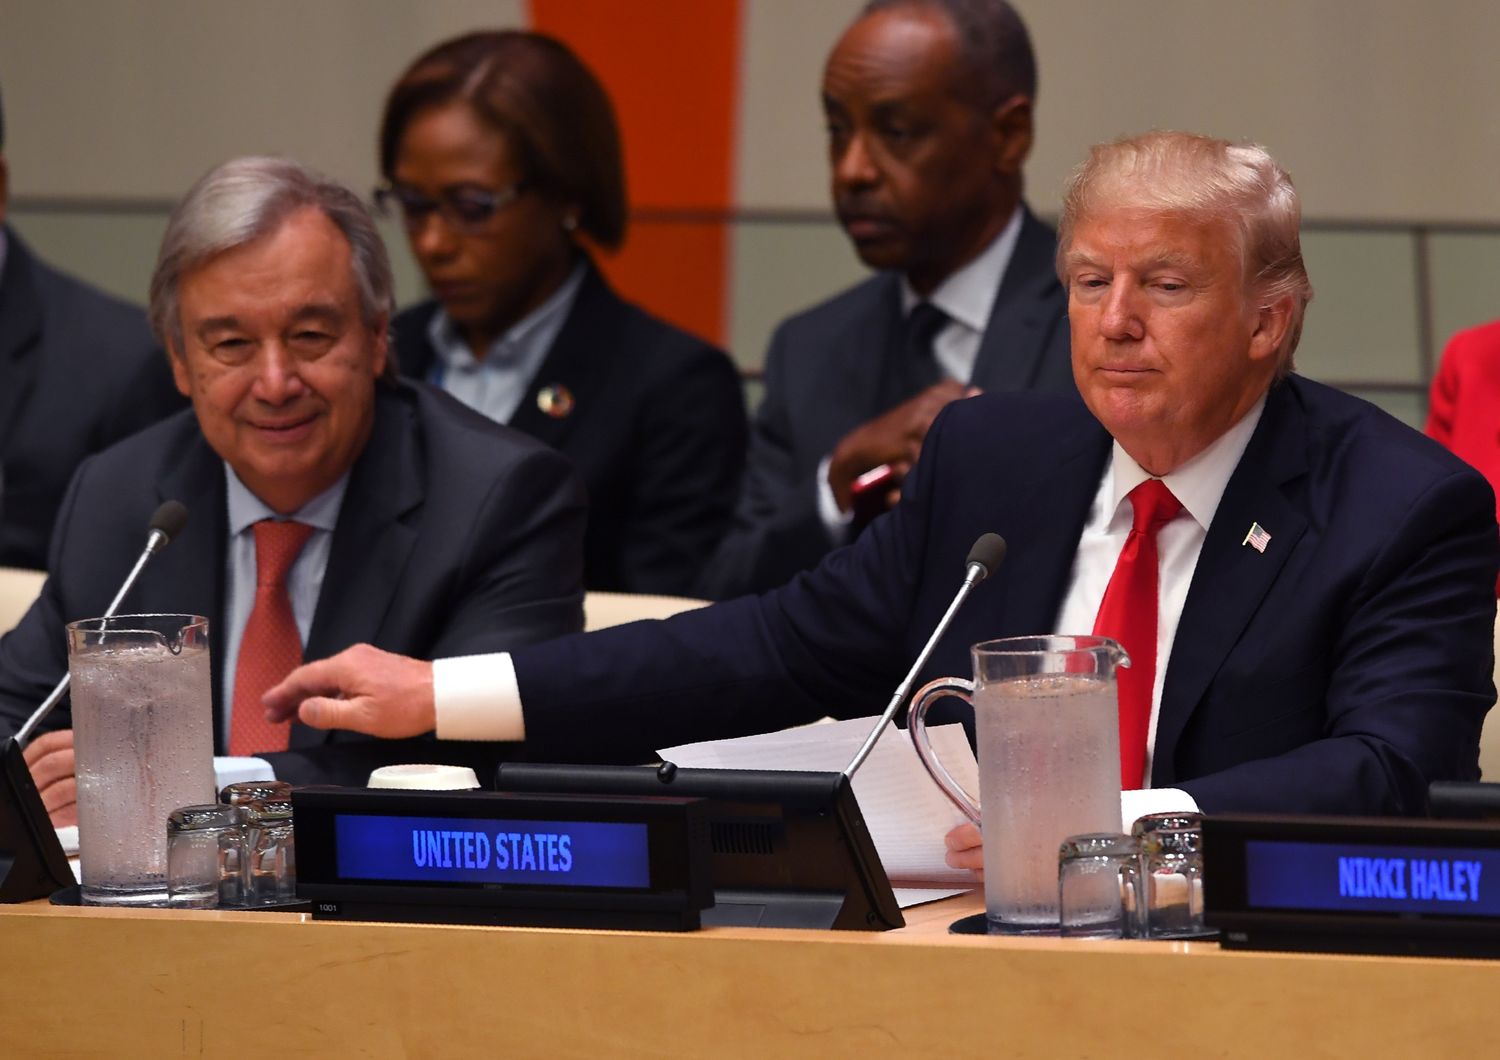 Il Presidente degli Stati Uniti Donald Trump e il Segretario Generale delle Nazioni Unite Antonio Guterre&nbsp;ad una riunione sulla riforma delle Nazioni Unite presso la sede delle Nazioni Unite a New York.&nbsp;